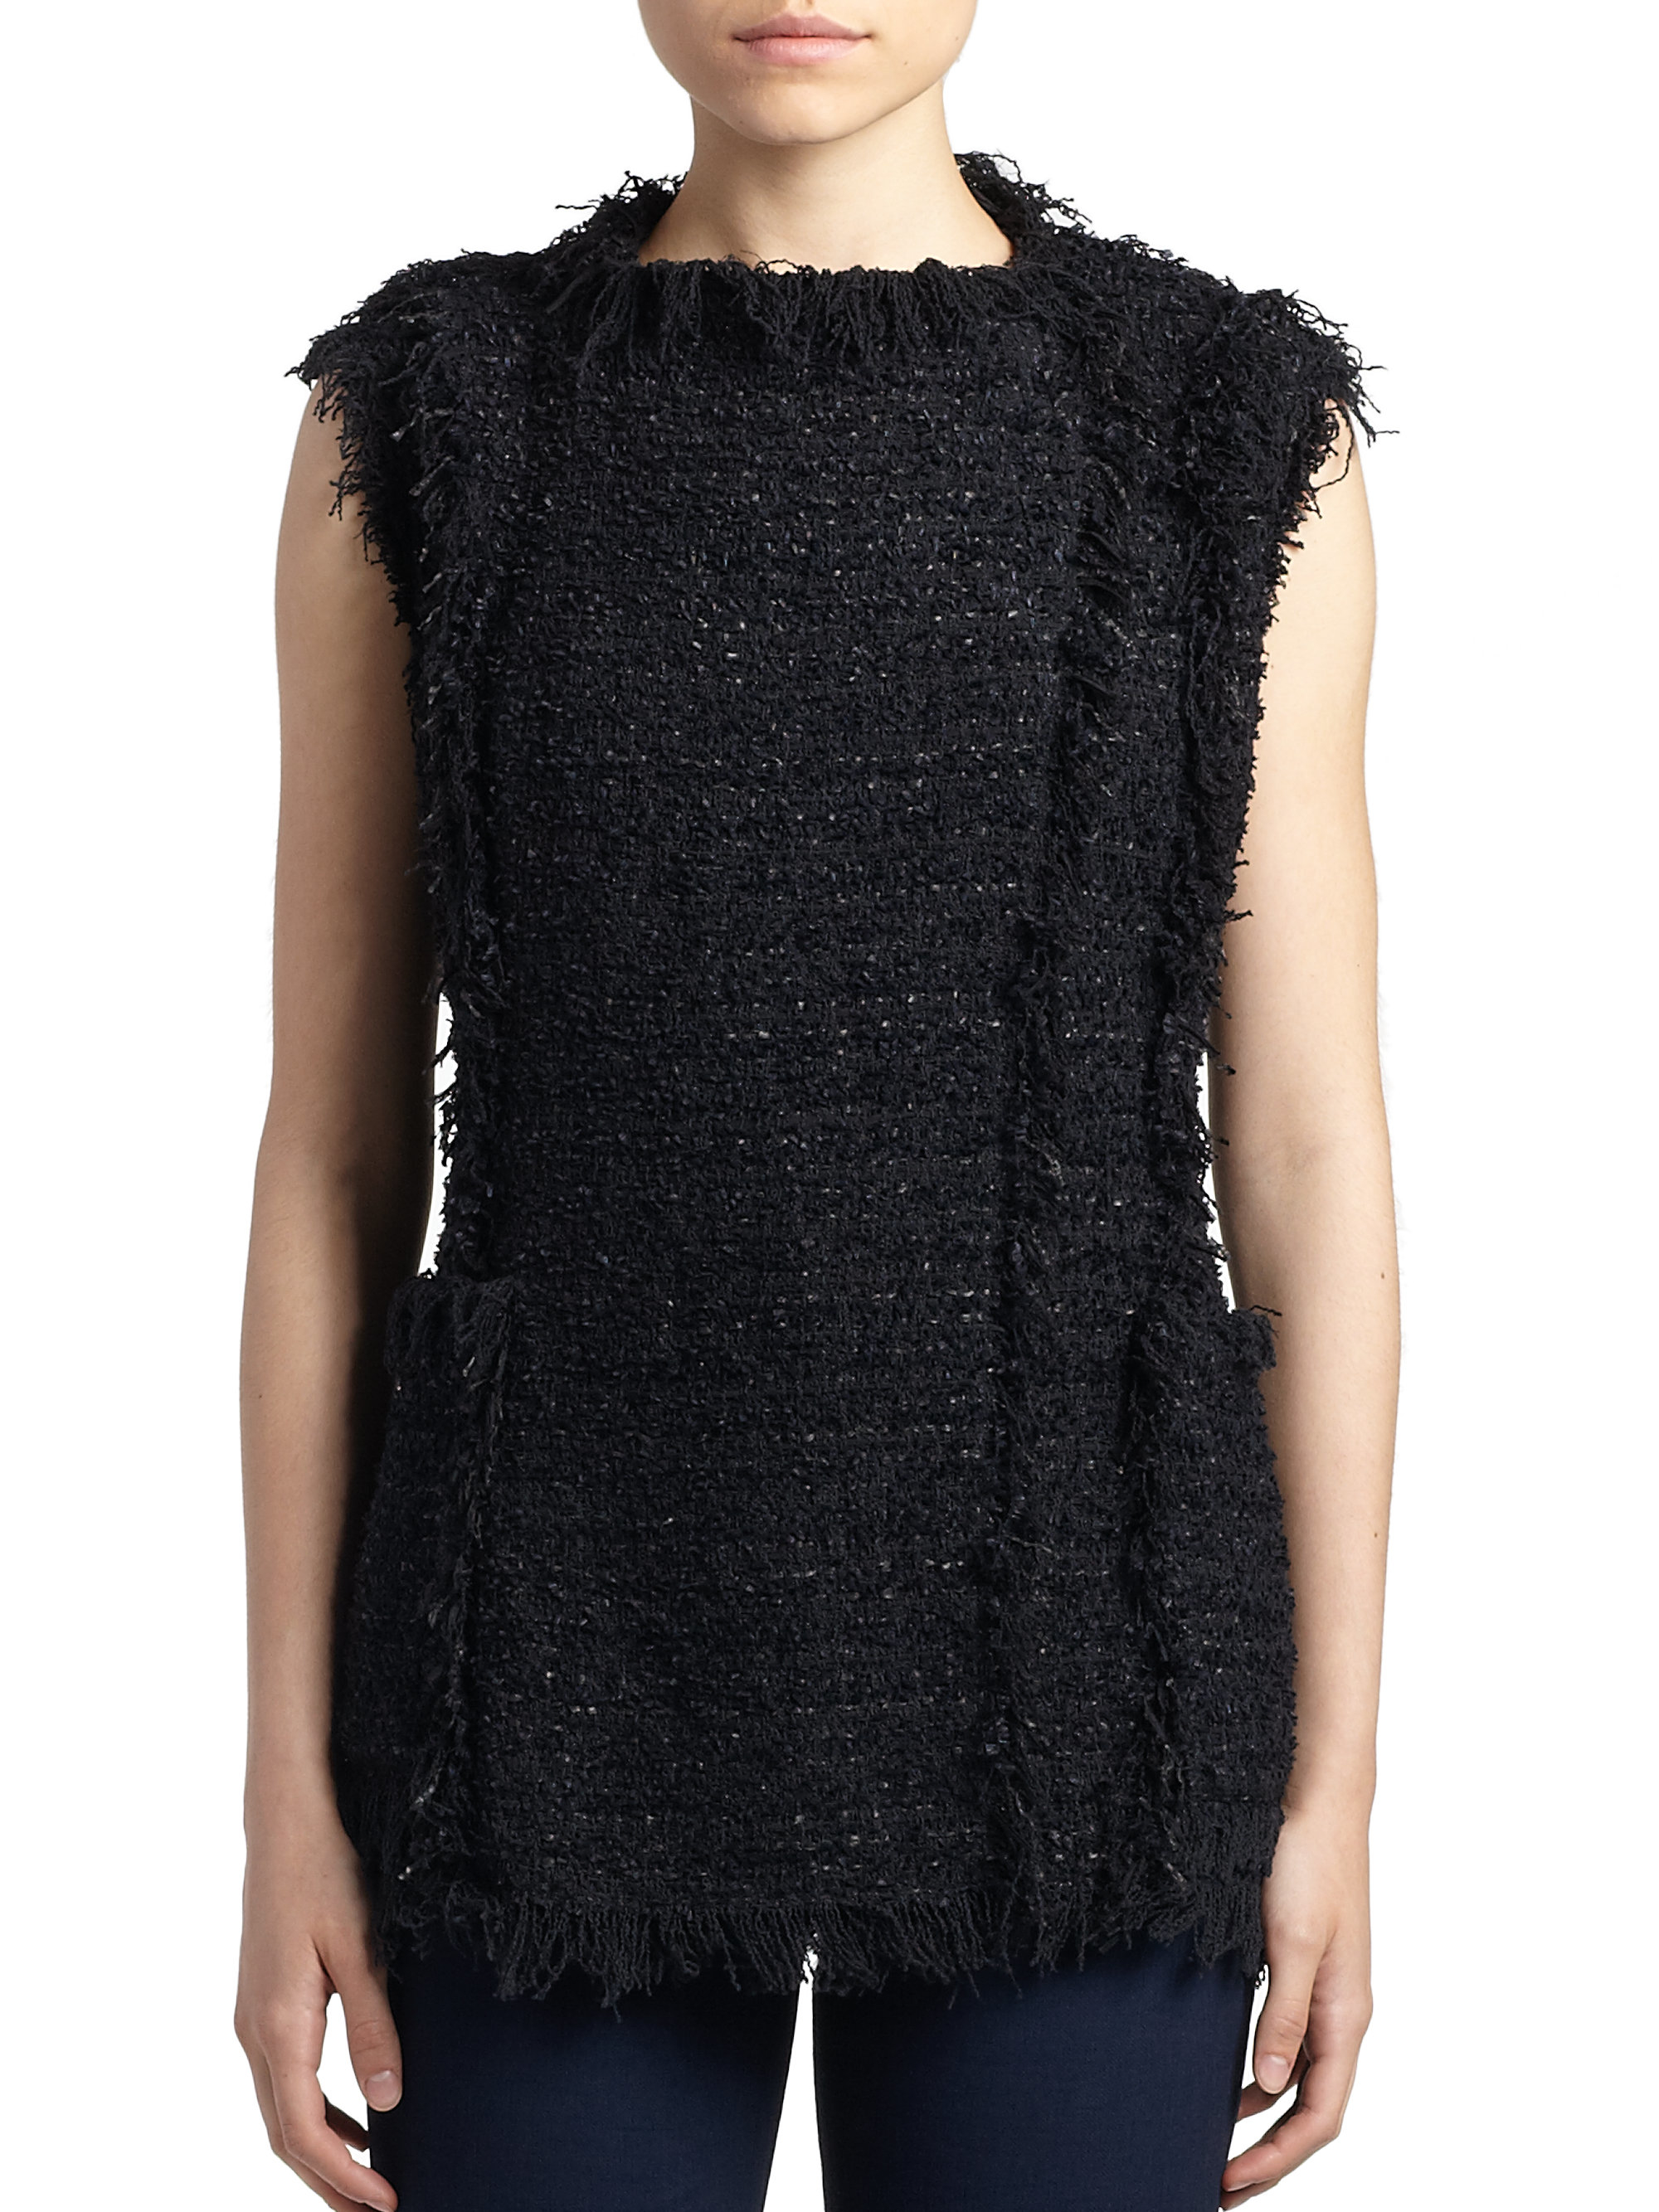 Lyst - Lanvin Deconstructed Tweed Top in Black